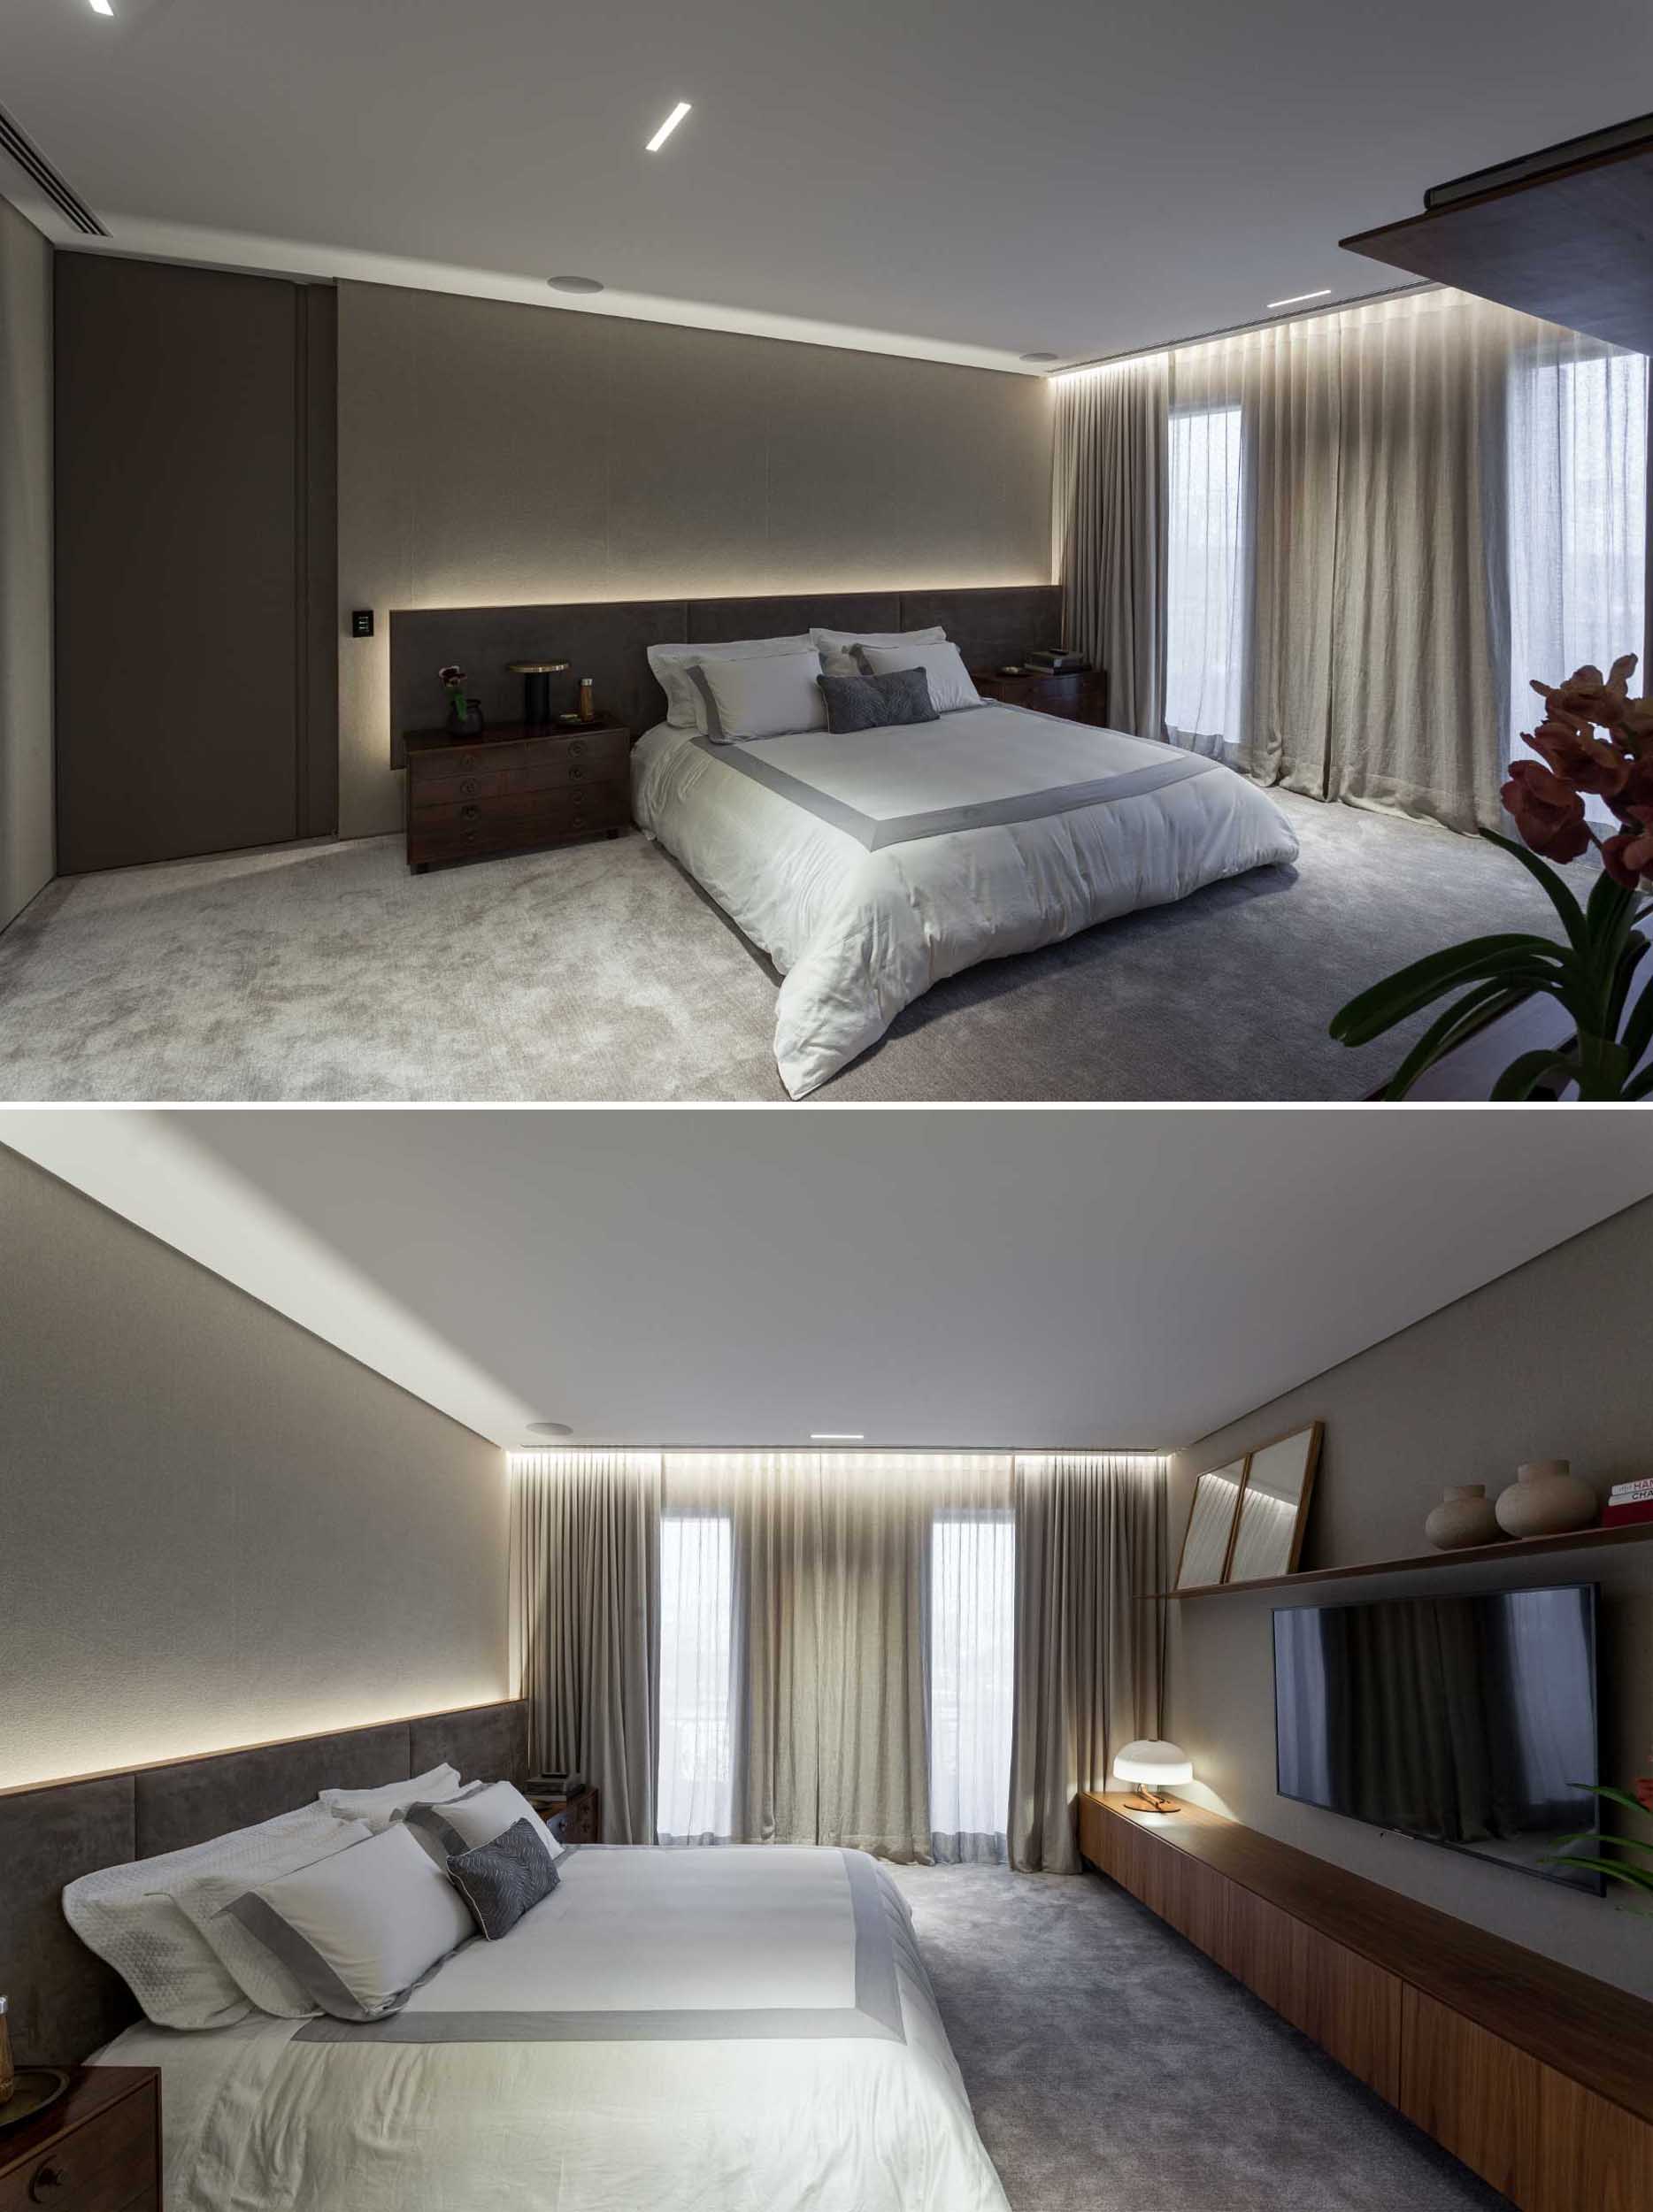 در این اتاق خواب اصلی، سر تخت دارای نور مخفی است که در بالای پرده ها نیز دیده می شود.  روبروی تخت، یک کنسول چوبی بلند وجود دارد که فضای ذخیره‌سازی زیر تلویزیون را اضافه می‌کند.